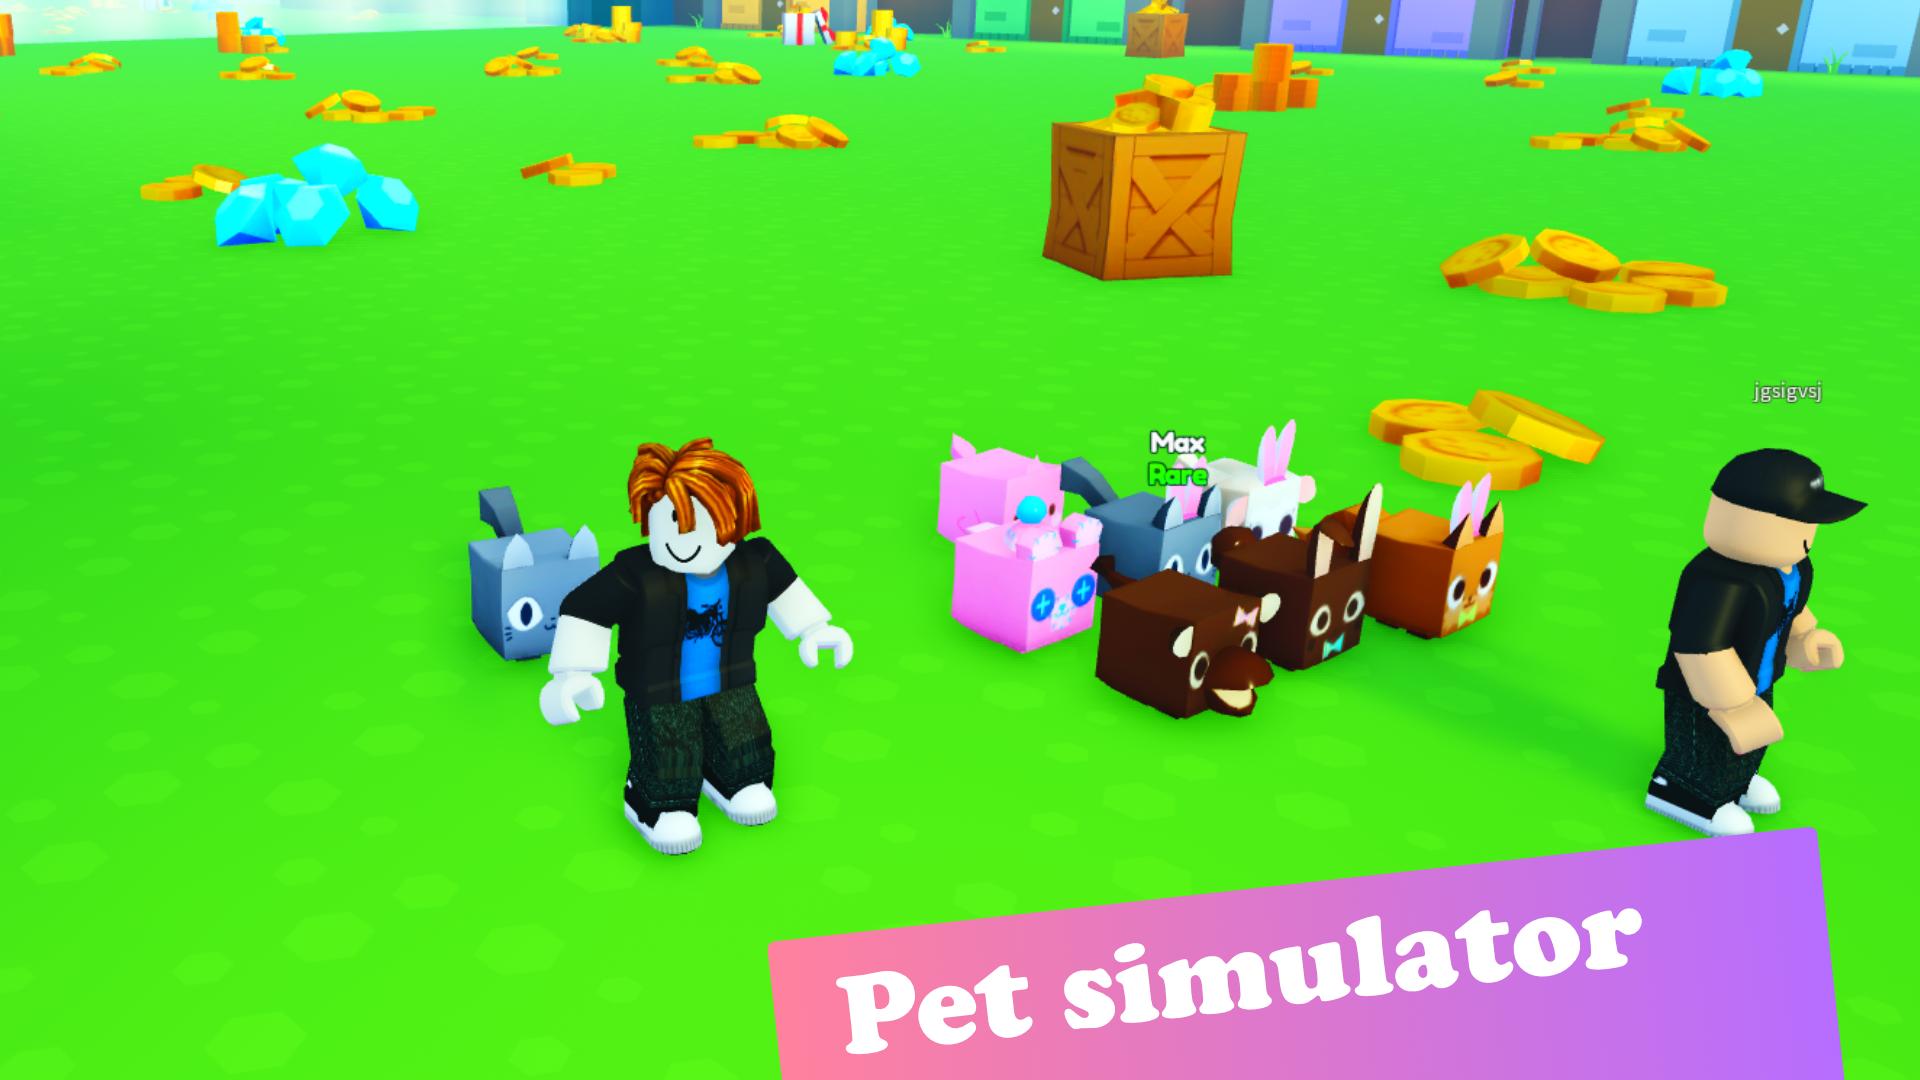 Pet simulator 99 values. Pet Simulator 99 icon.